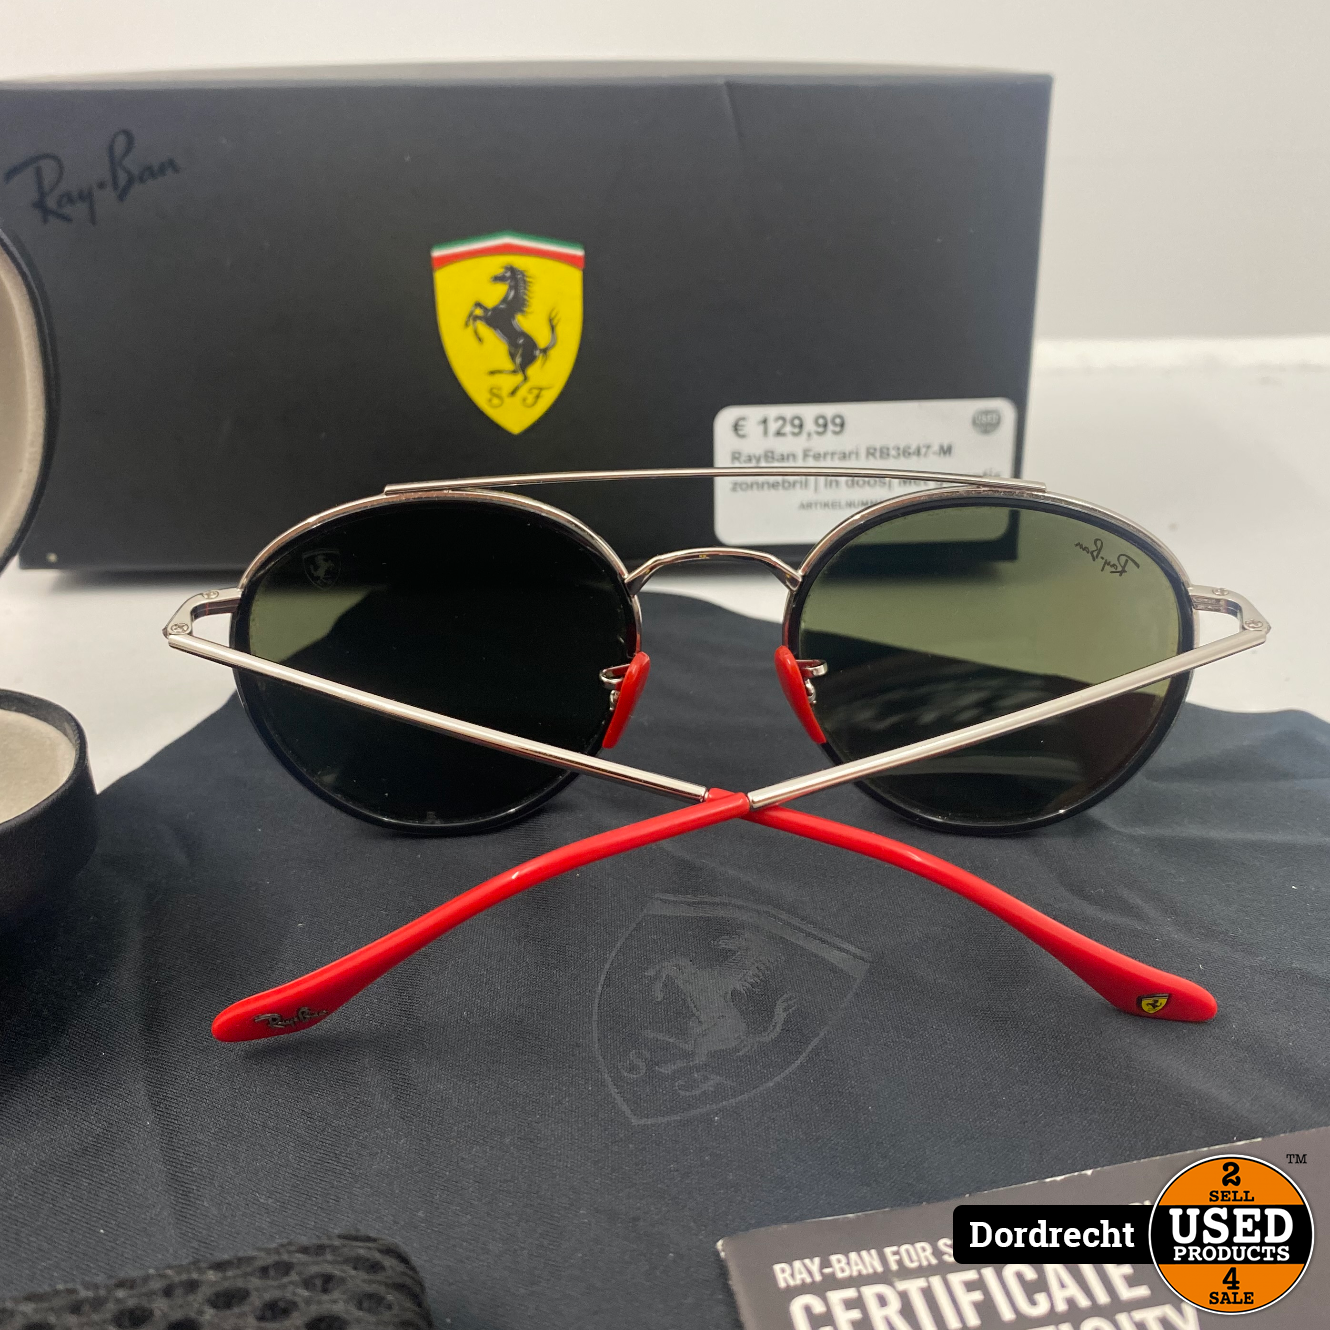 tuin Vijandig Eekhoorn RayBan Ferrari RB3647-M zonnebril | In doos | Met garantie - Used Products  Dordrecht